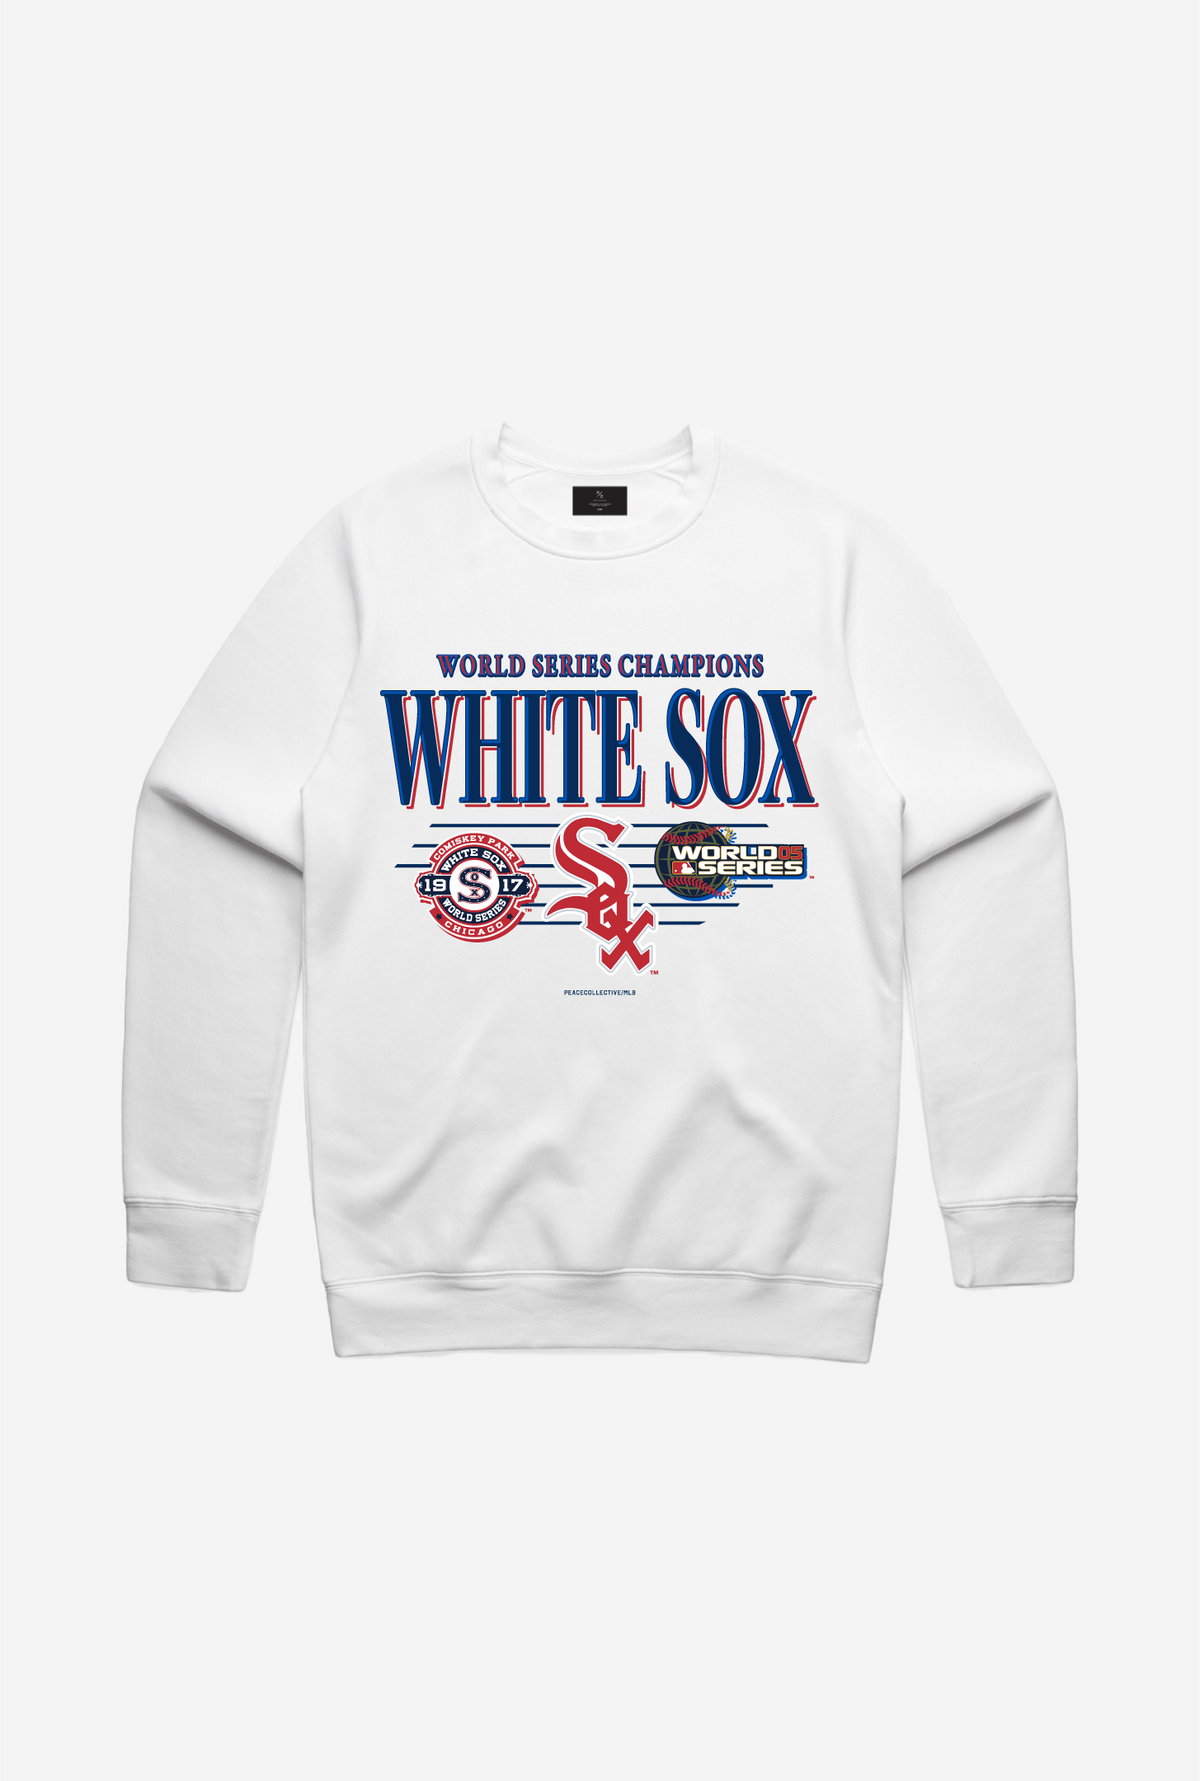 Chicago White Sox Throwback Crewneck - White